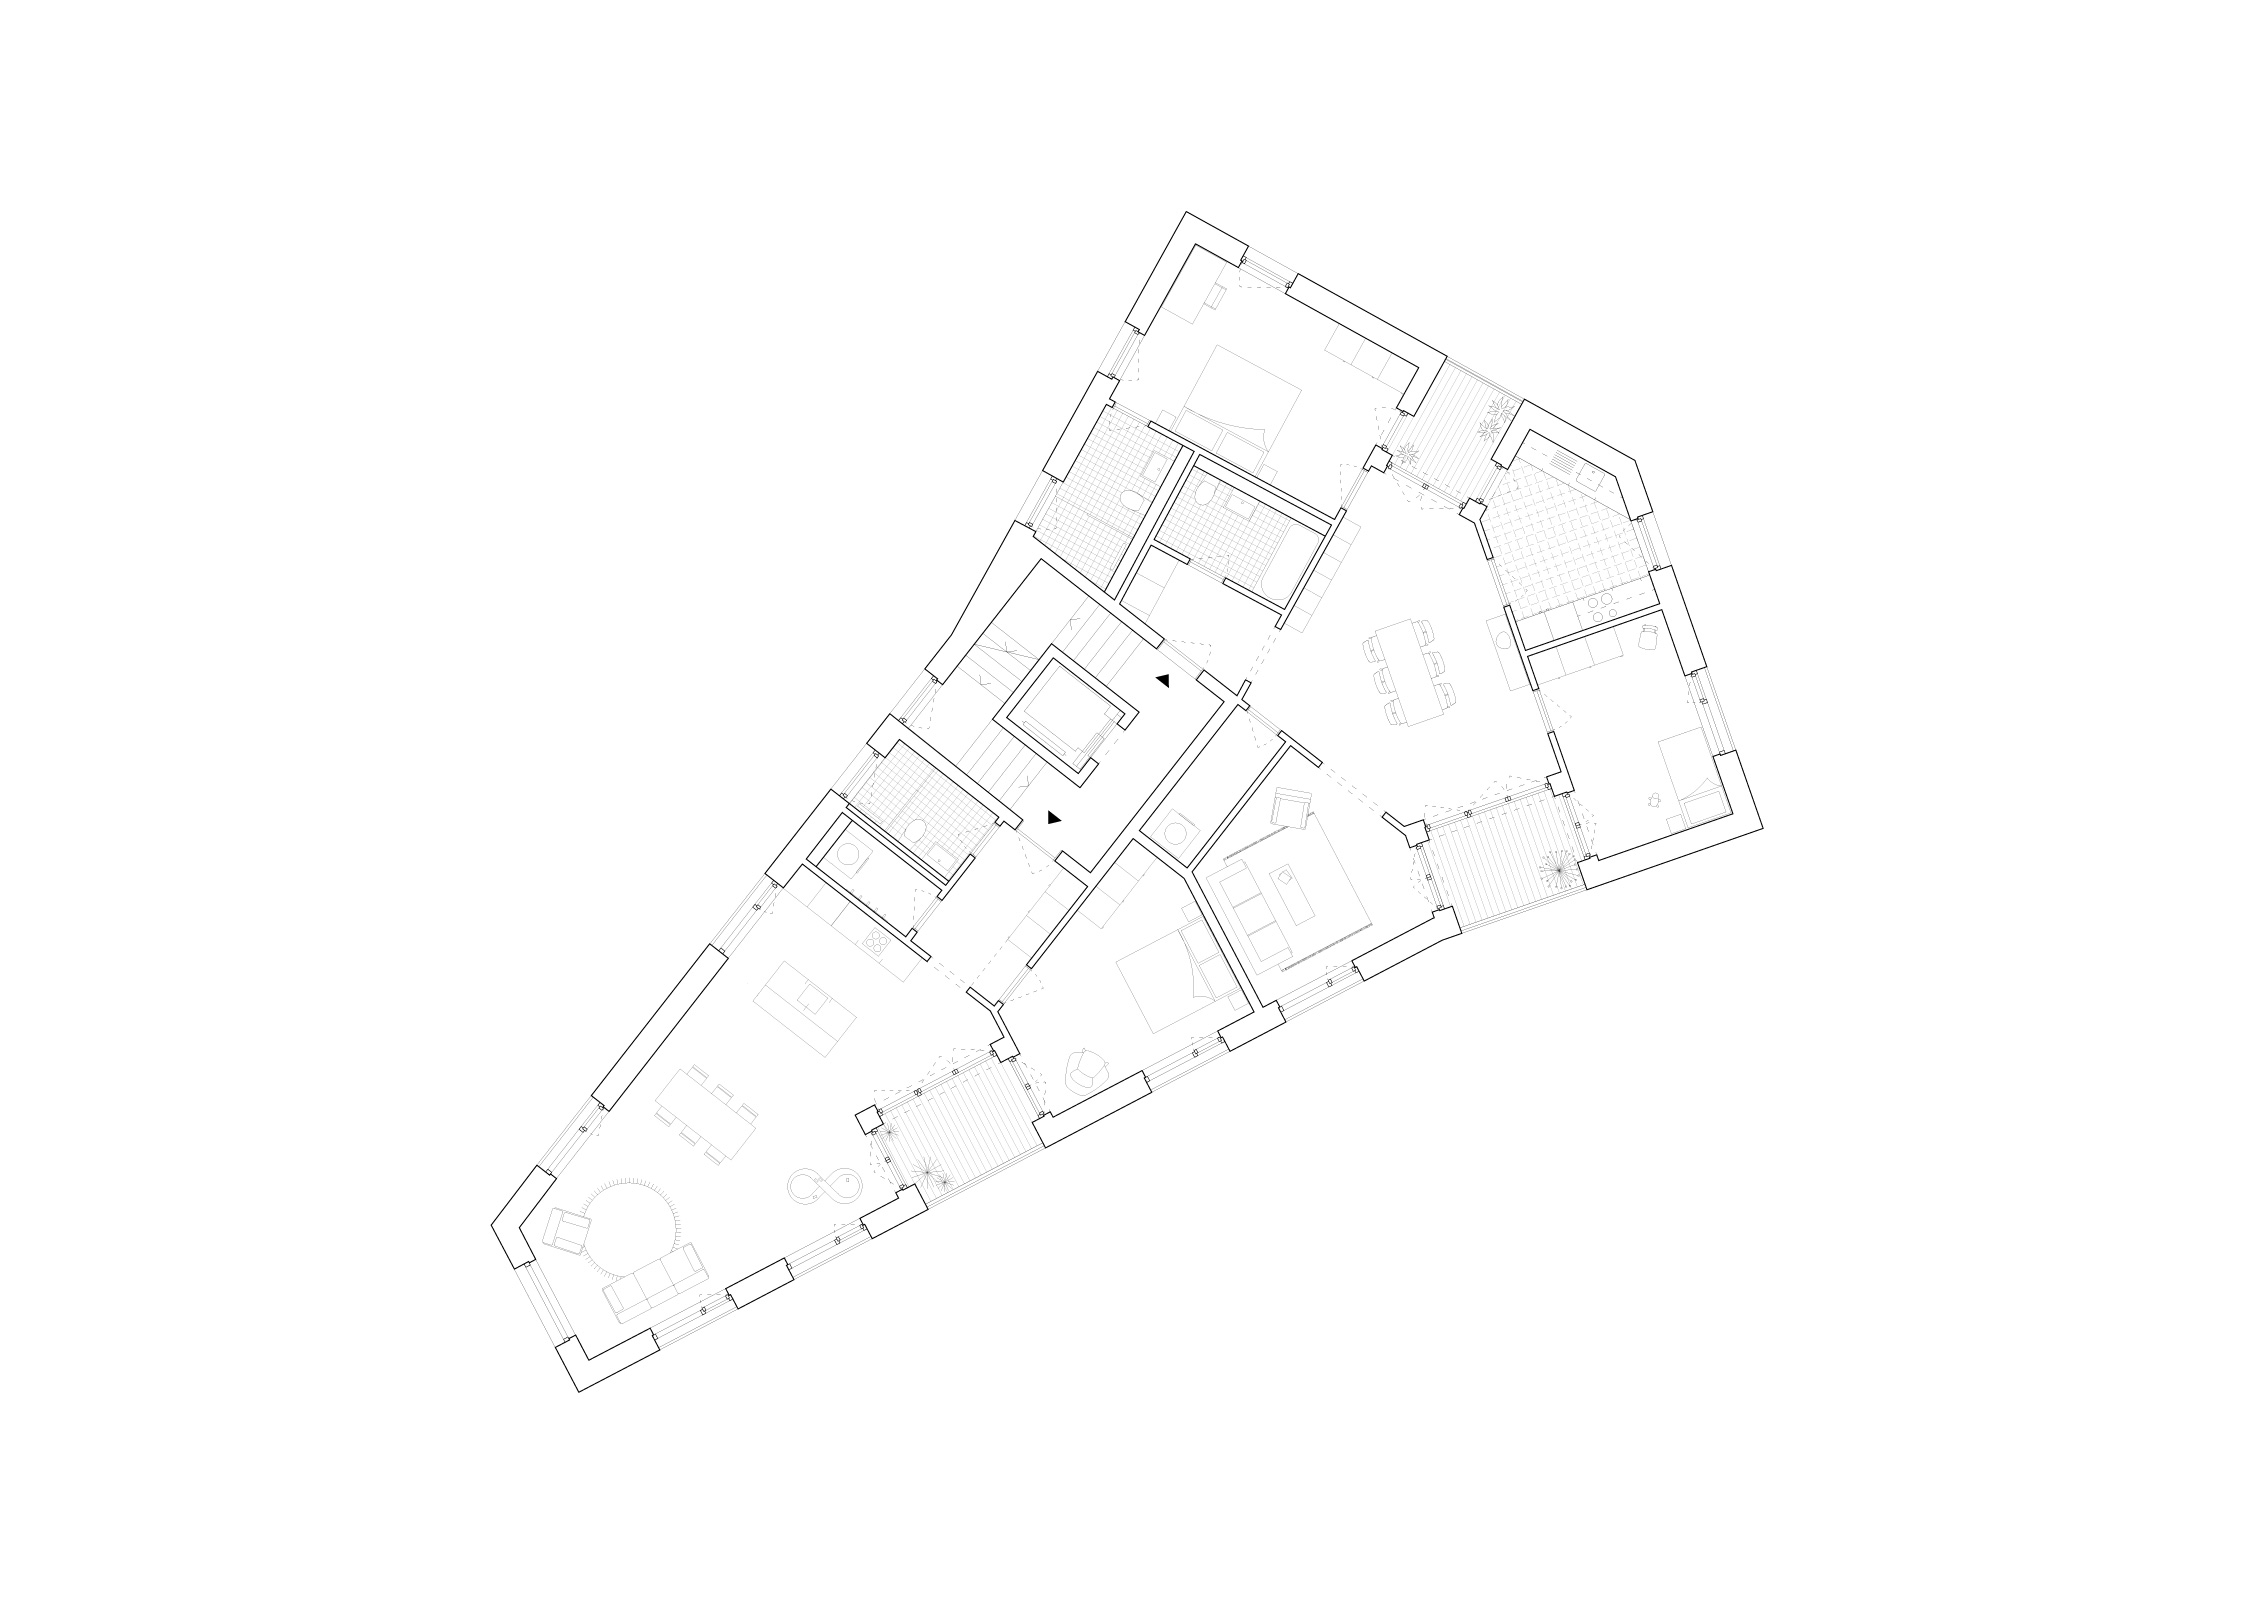 Typical floor plan